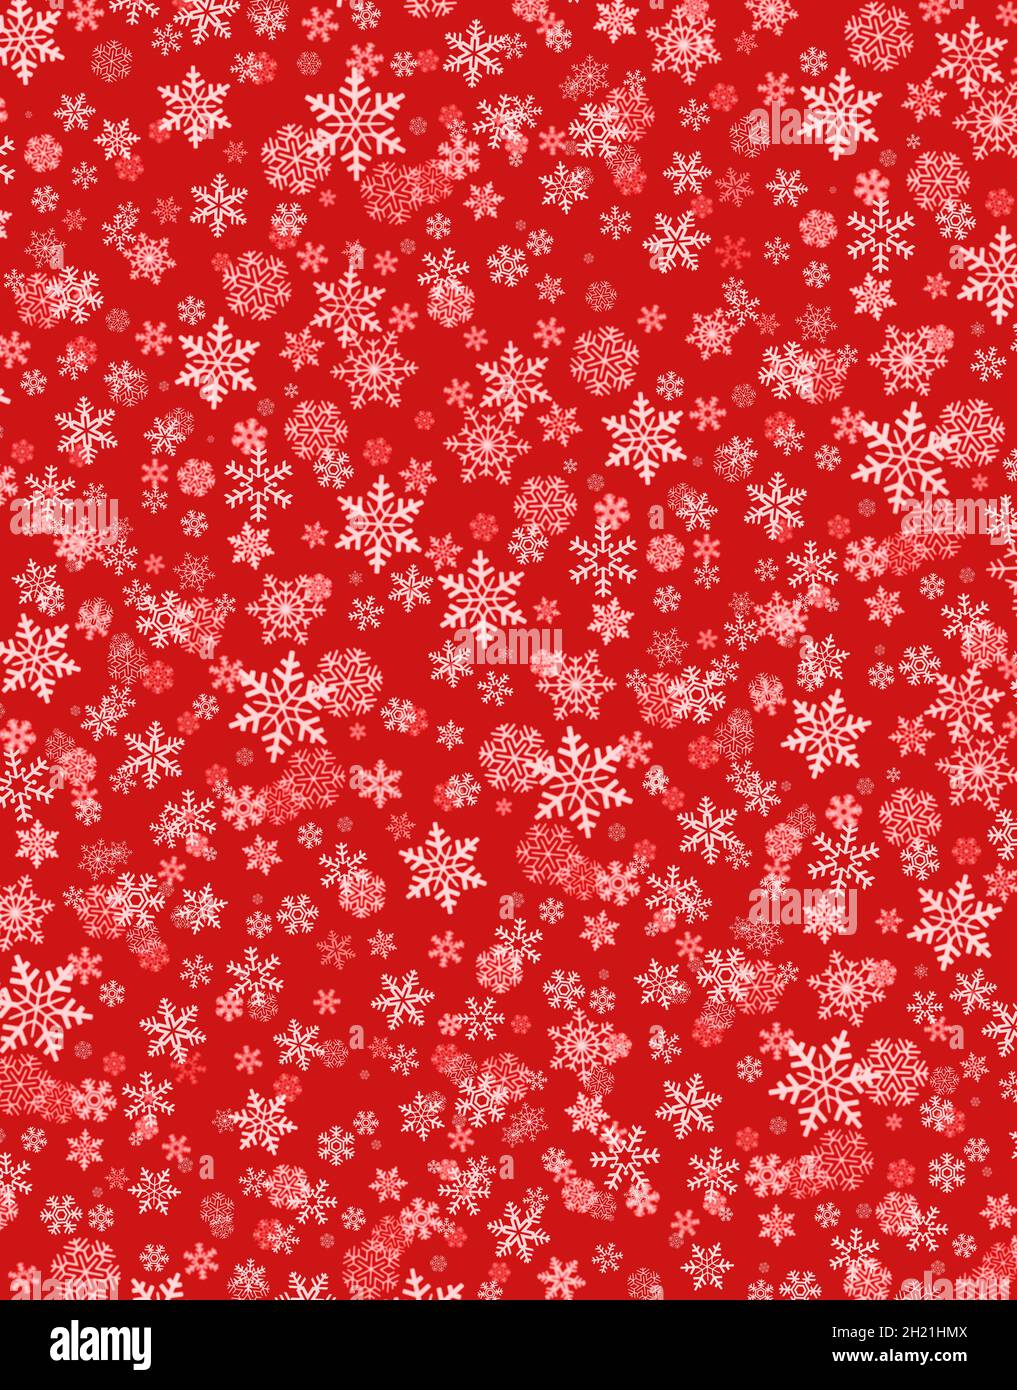 Schneeflocken Formen auf einem roten Hintergrund. Material für die Weihnachtszeit. Stockfoto